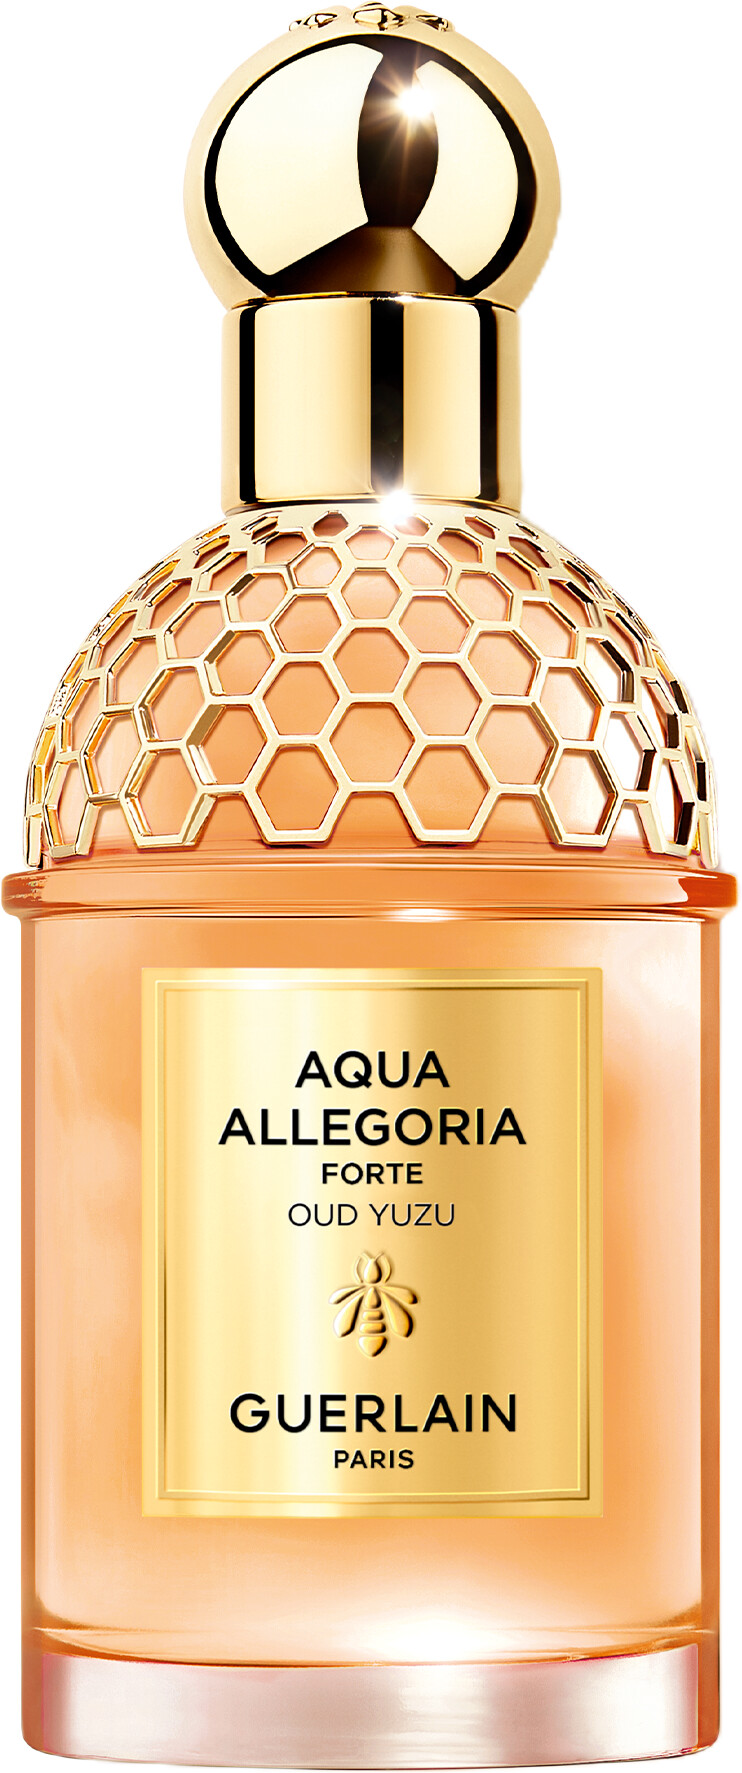 GUERLAIN Aqua Allegoria Forte Oud Yuzu Eau de Parfum Spray 75ml